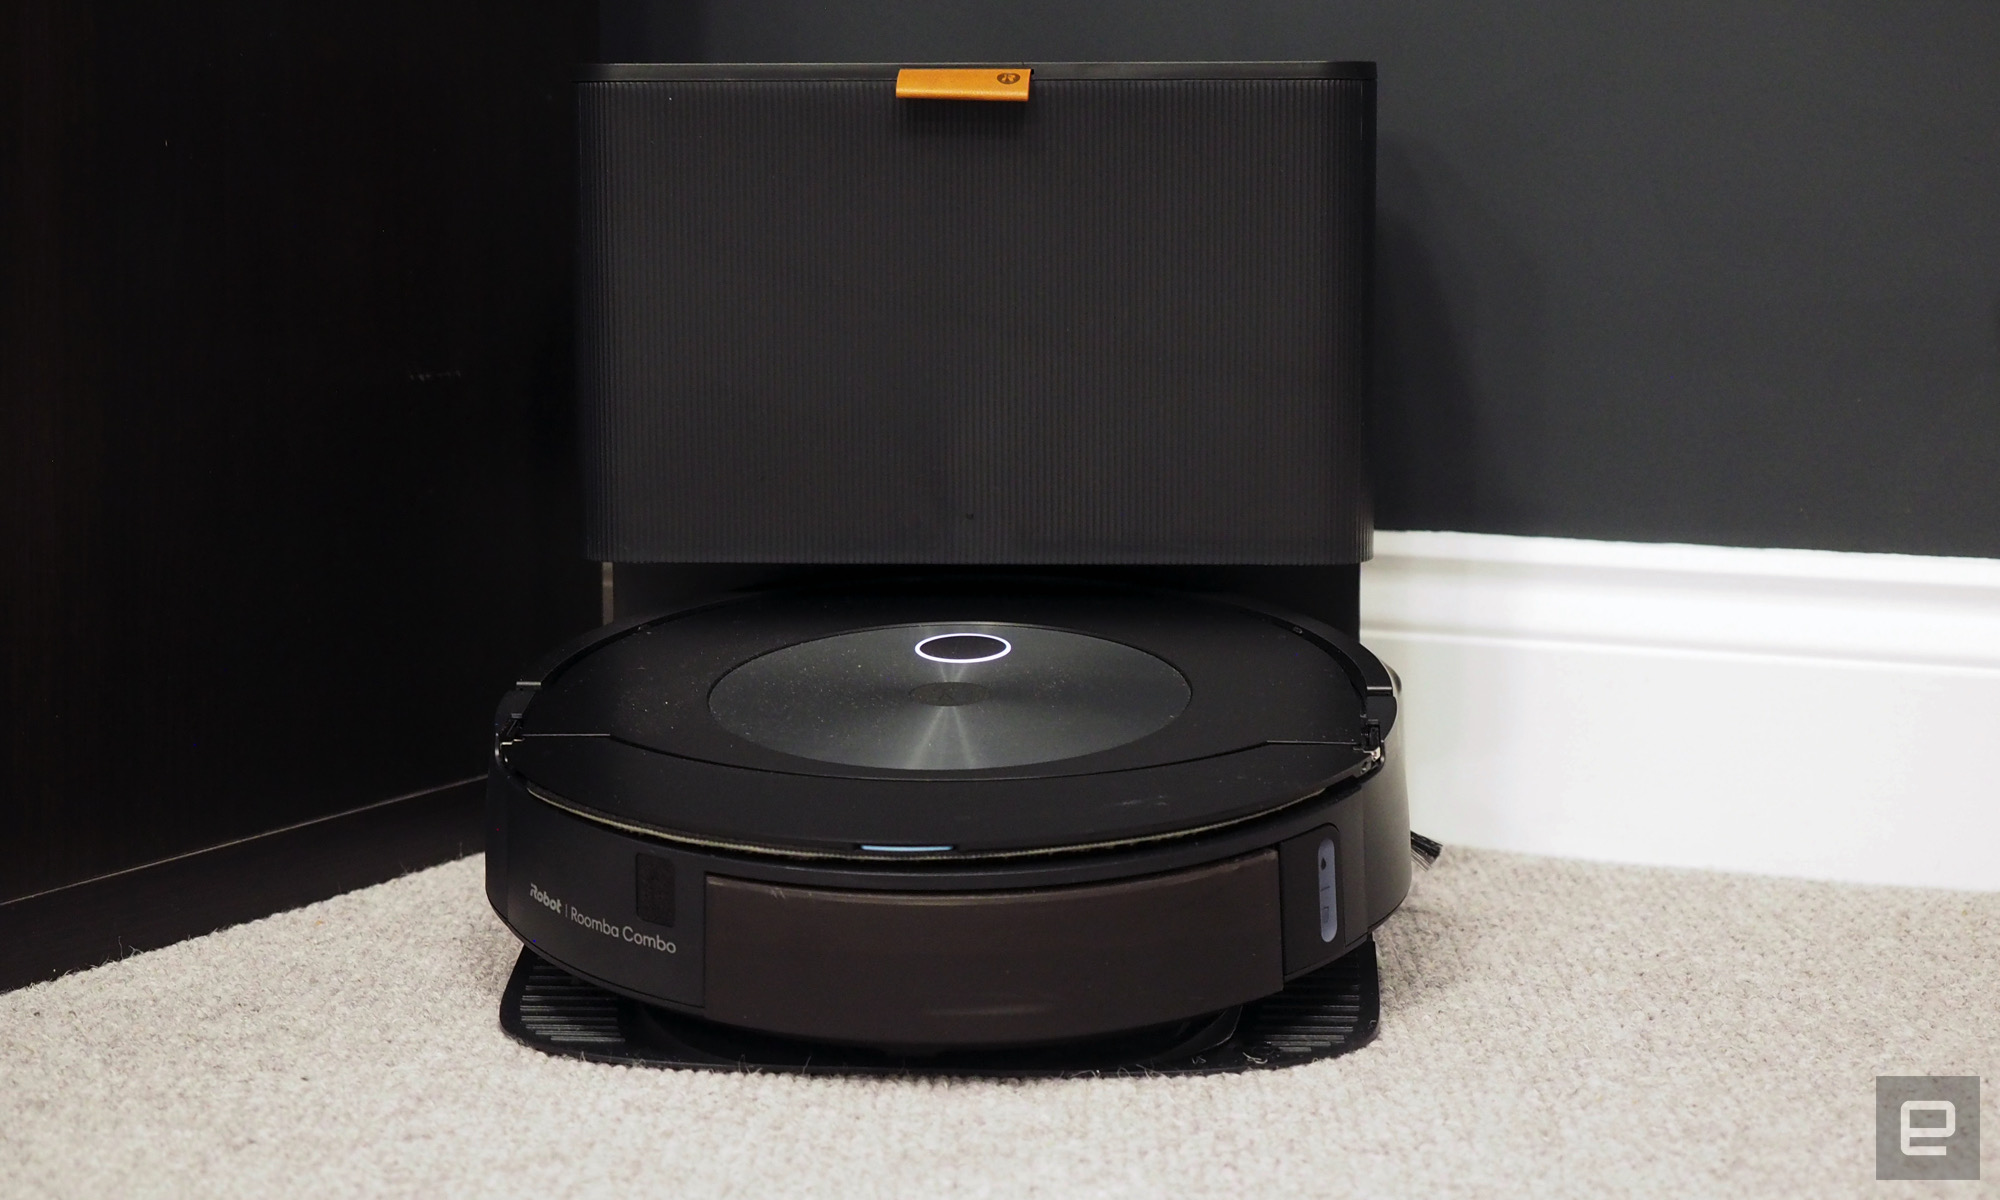 iRobot's Roomba Combo j7+ máy hút bụi và cây lau nhà hiện đang giảm giá $200